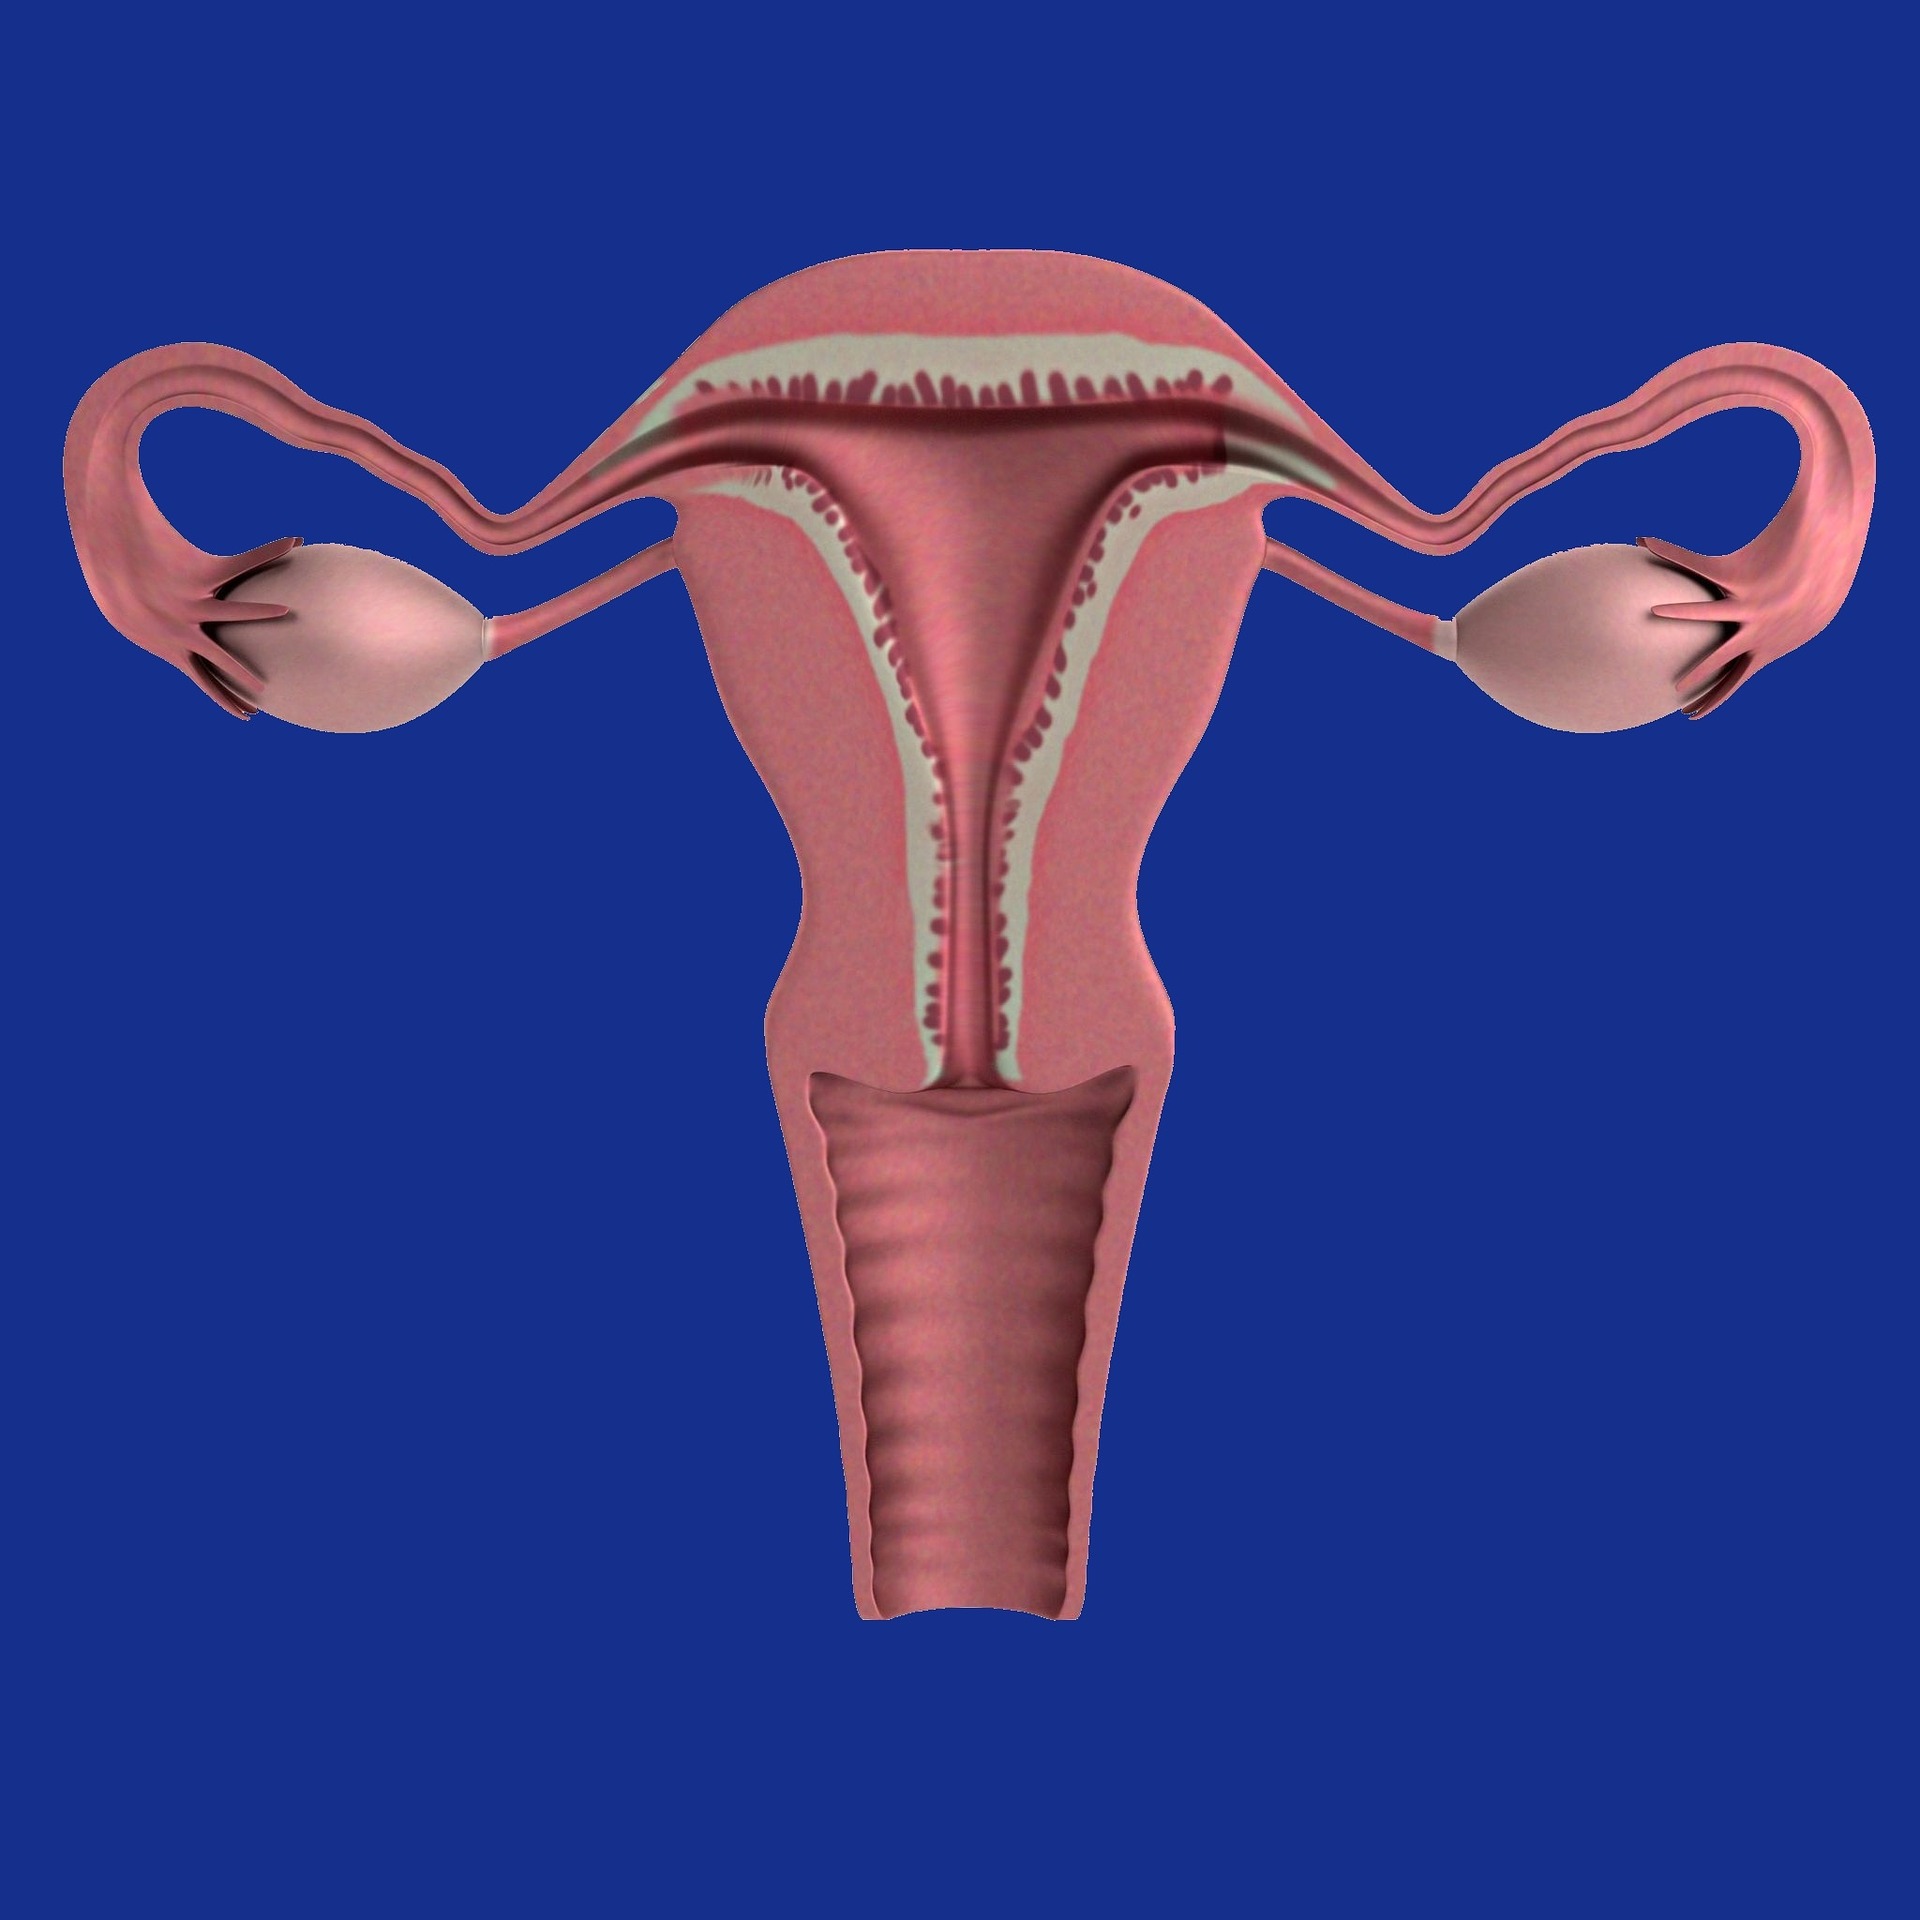 uterus-1089344_1920